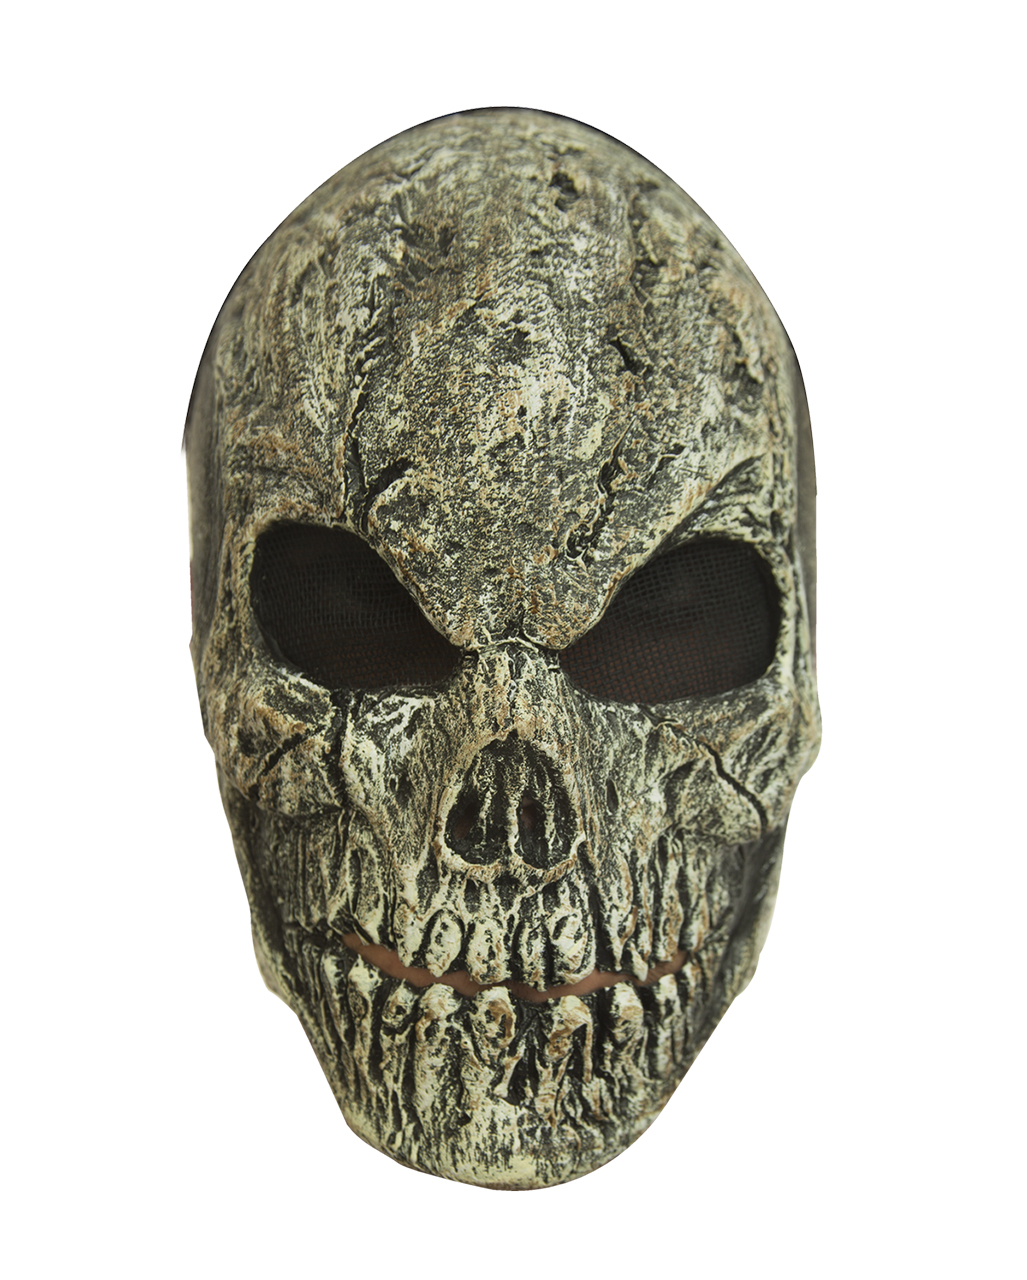 Totenschädelmaske mit Haube sortiert Totenkopf Maske Horror Halloween 126048713